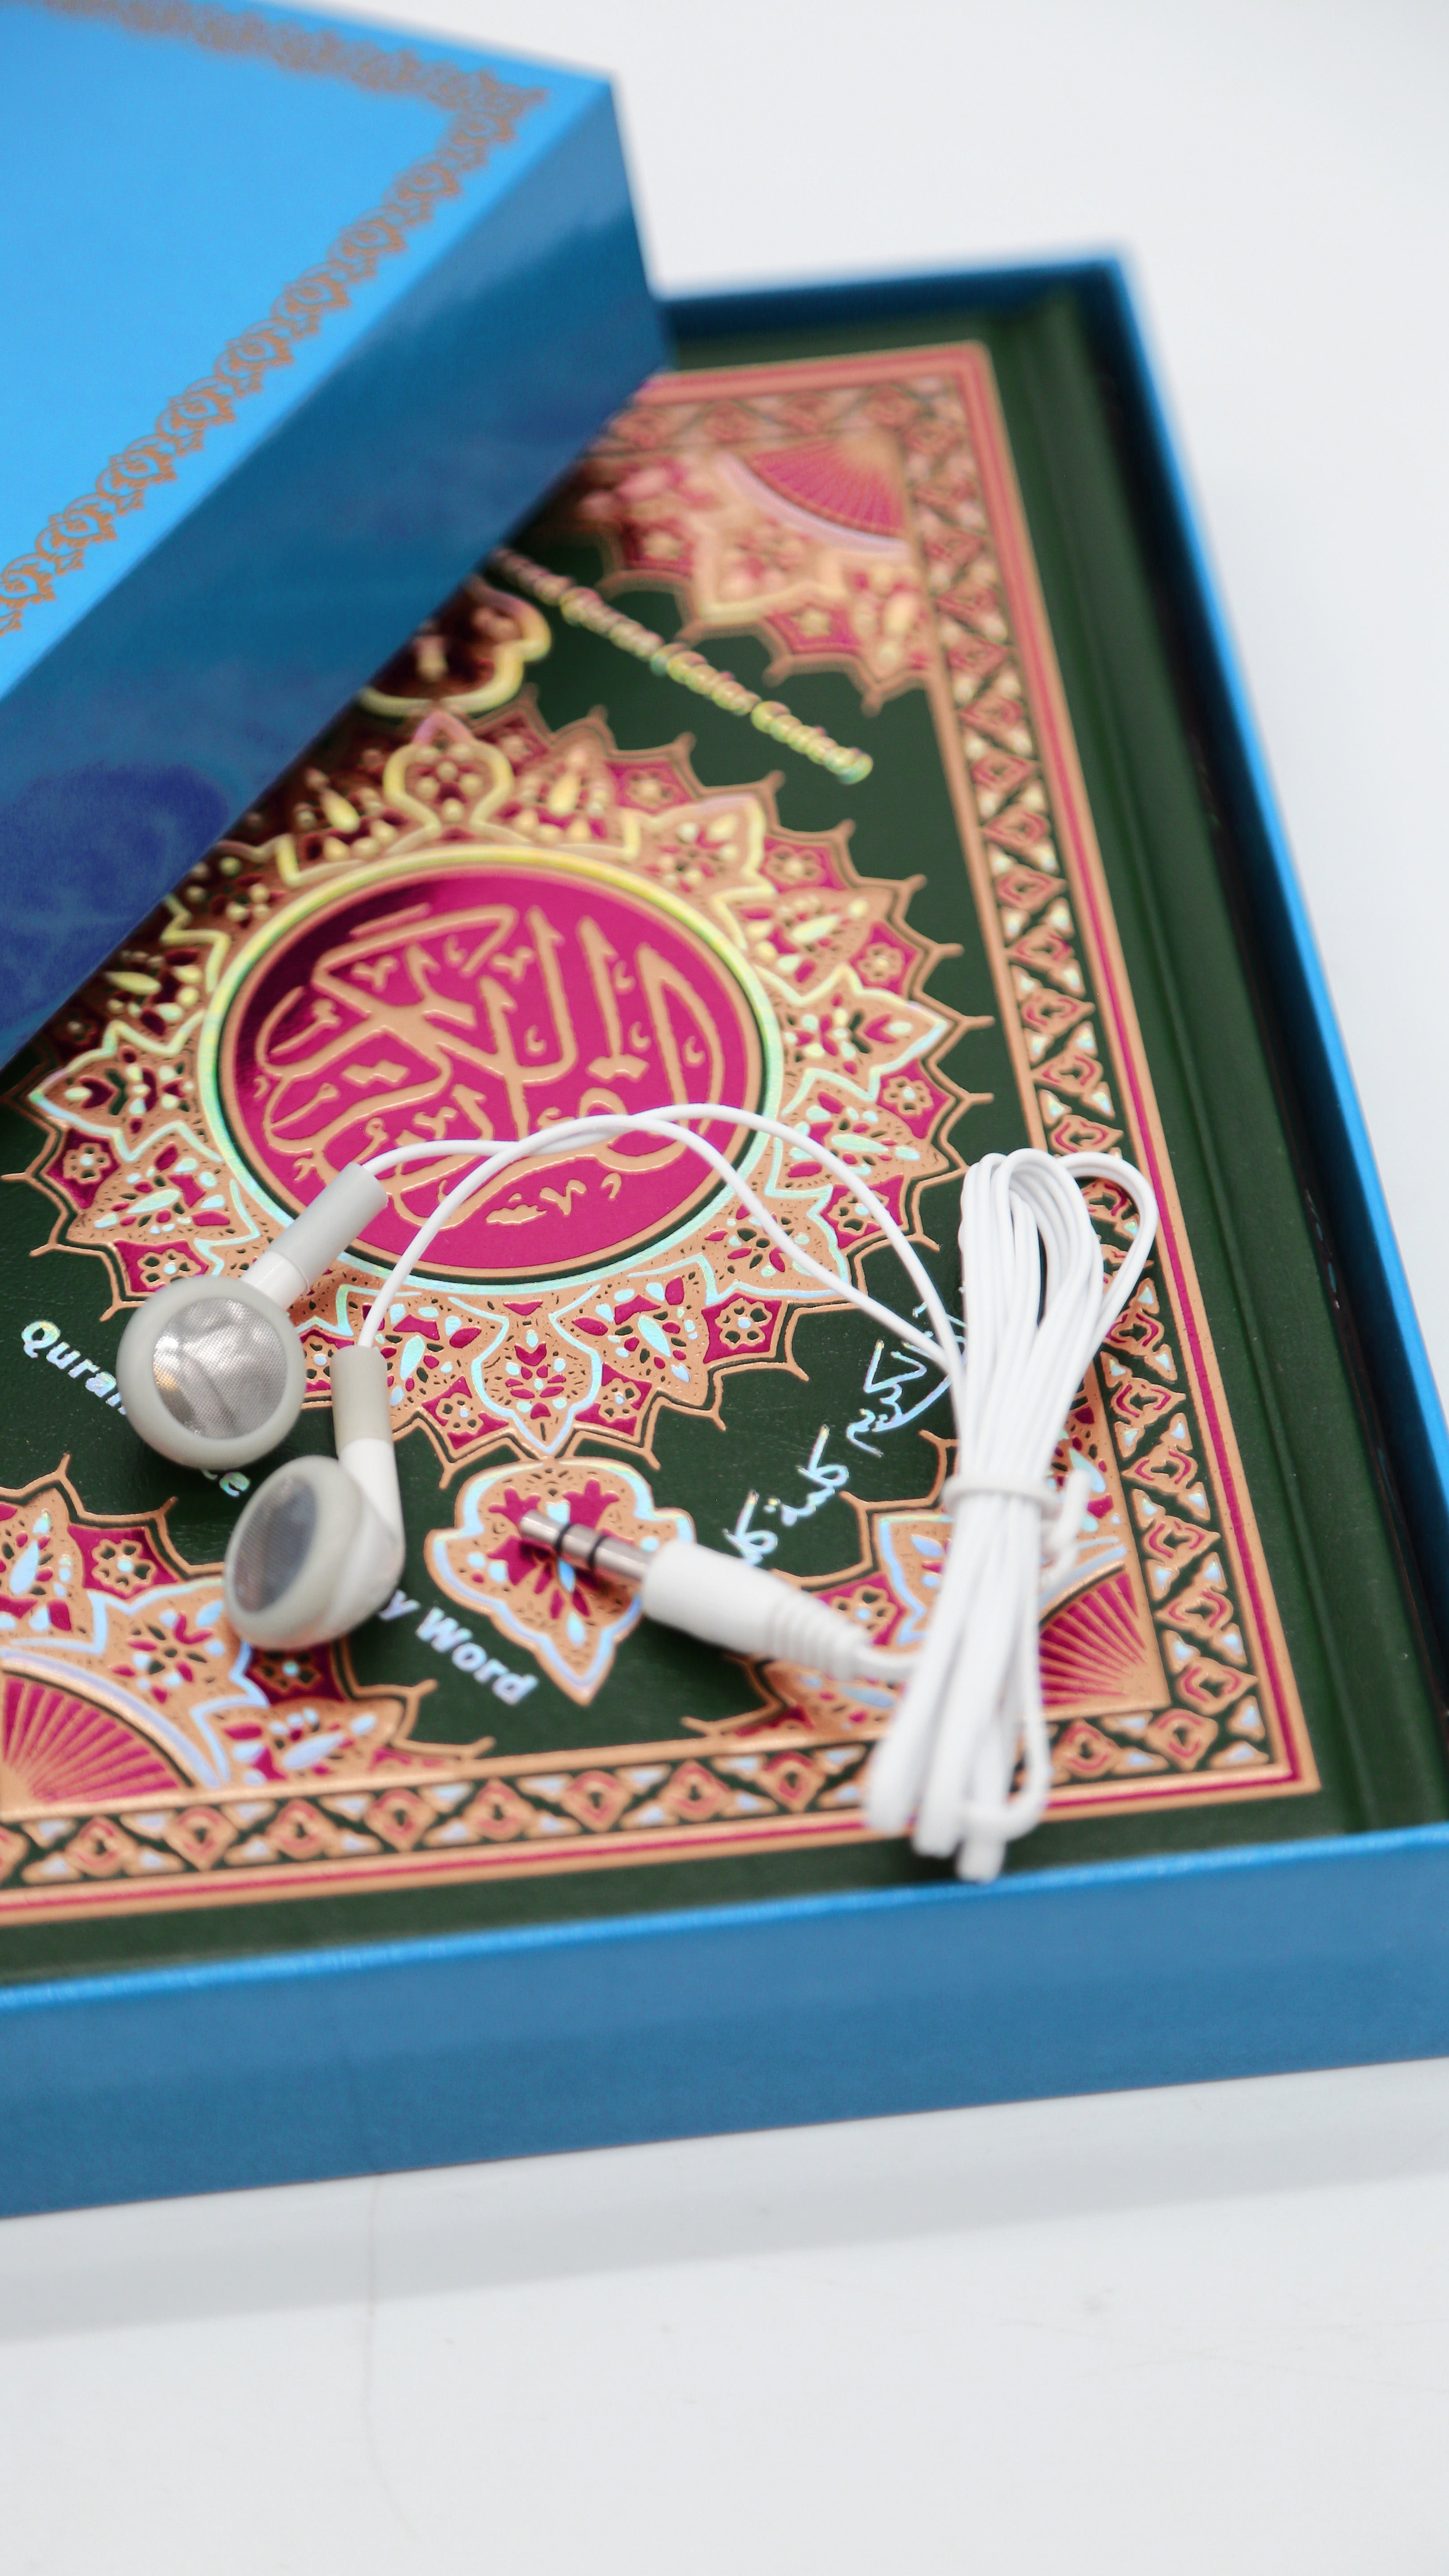 Le stylo bluetooth pour lire le Quran – souk-dubai